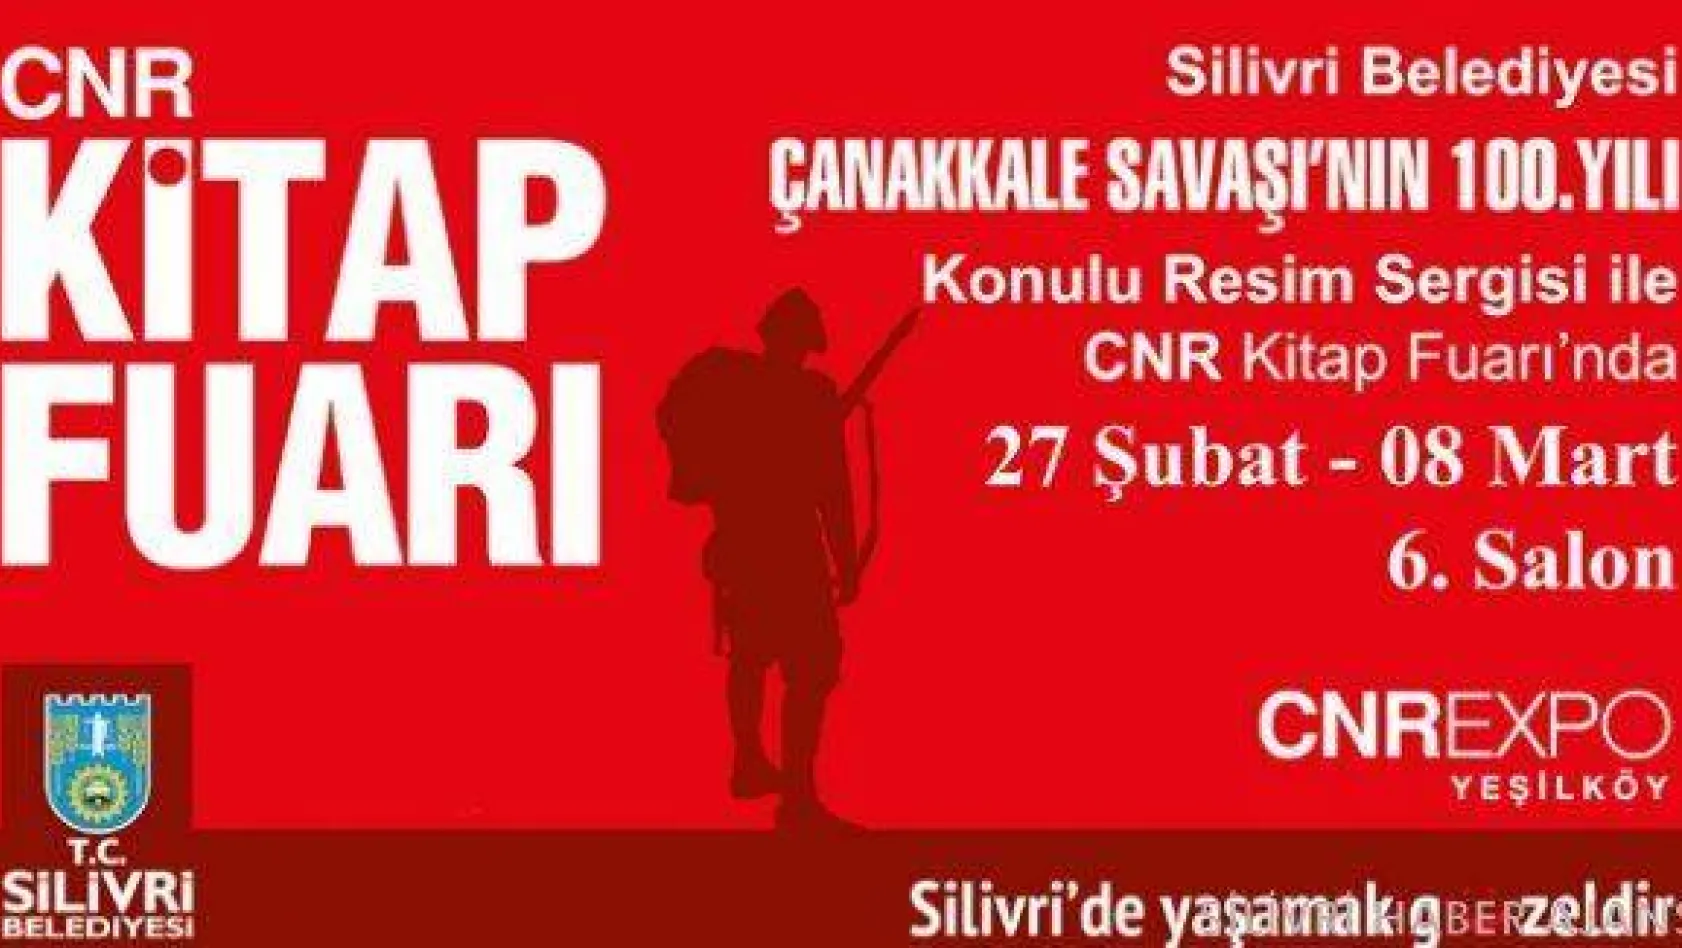 Belediyeden CNR'da Çanakkale Konulu Resim Sergisi